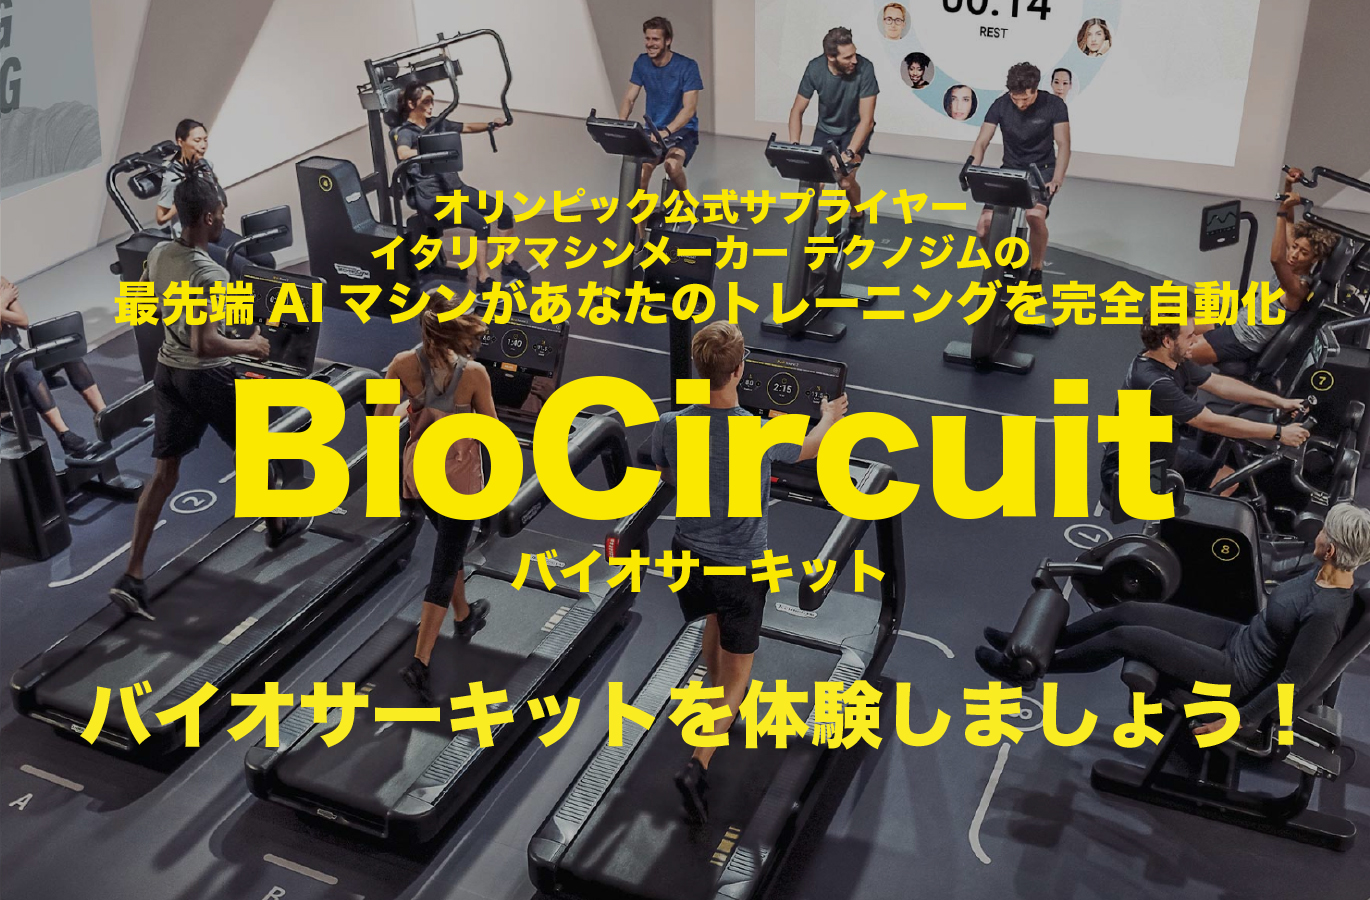 オリンピック公式サプライヤー
        イタリアマシンメーカー テクノジムの
        最先端AIマシンがあなたのトレーニングを完全自動化
        BioCircuitバイオサーキット
        バイオサーキットを体験しましょう！
      